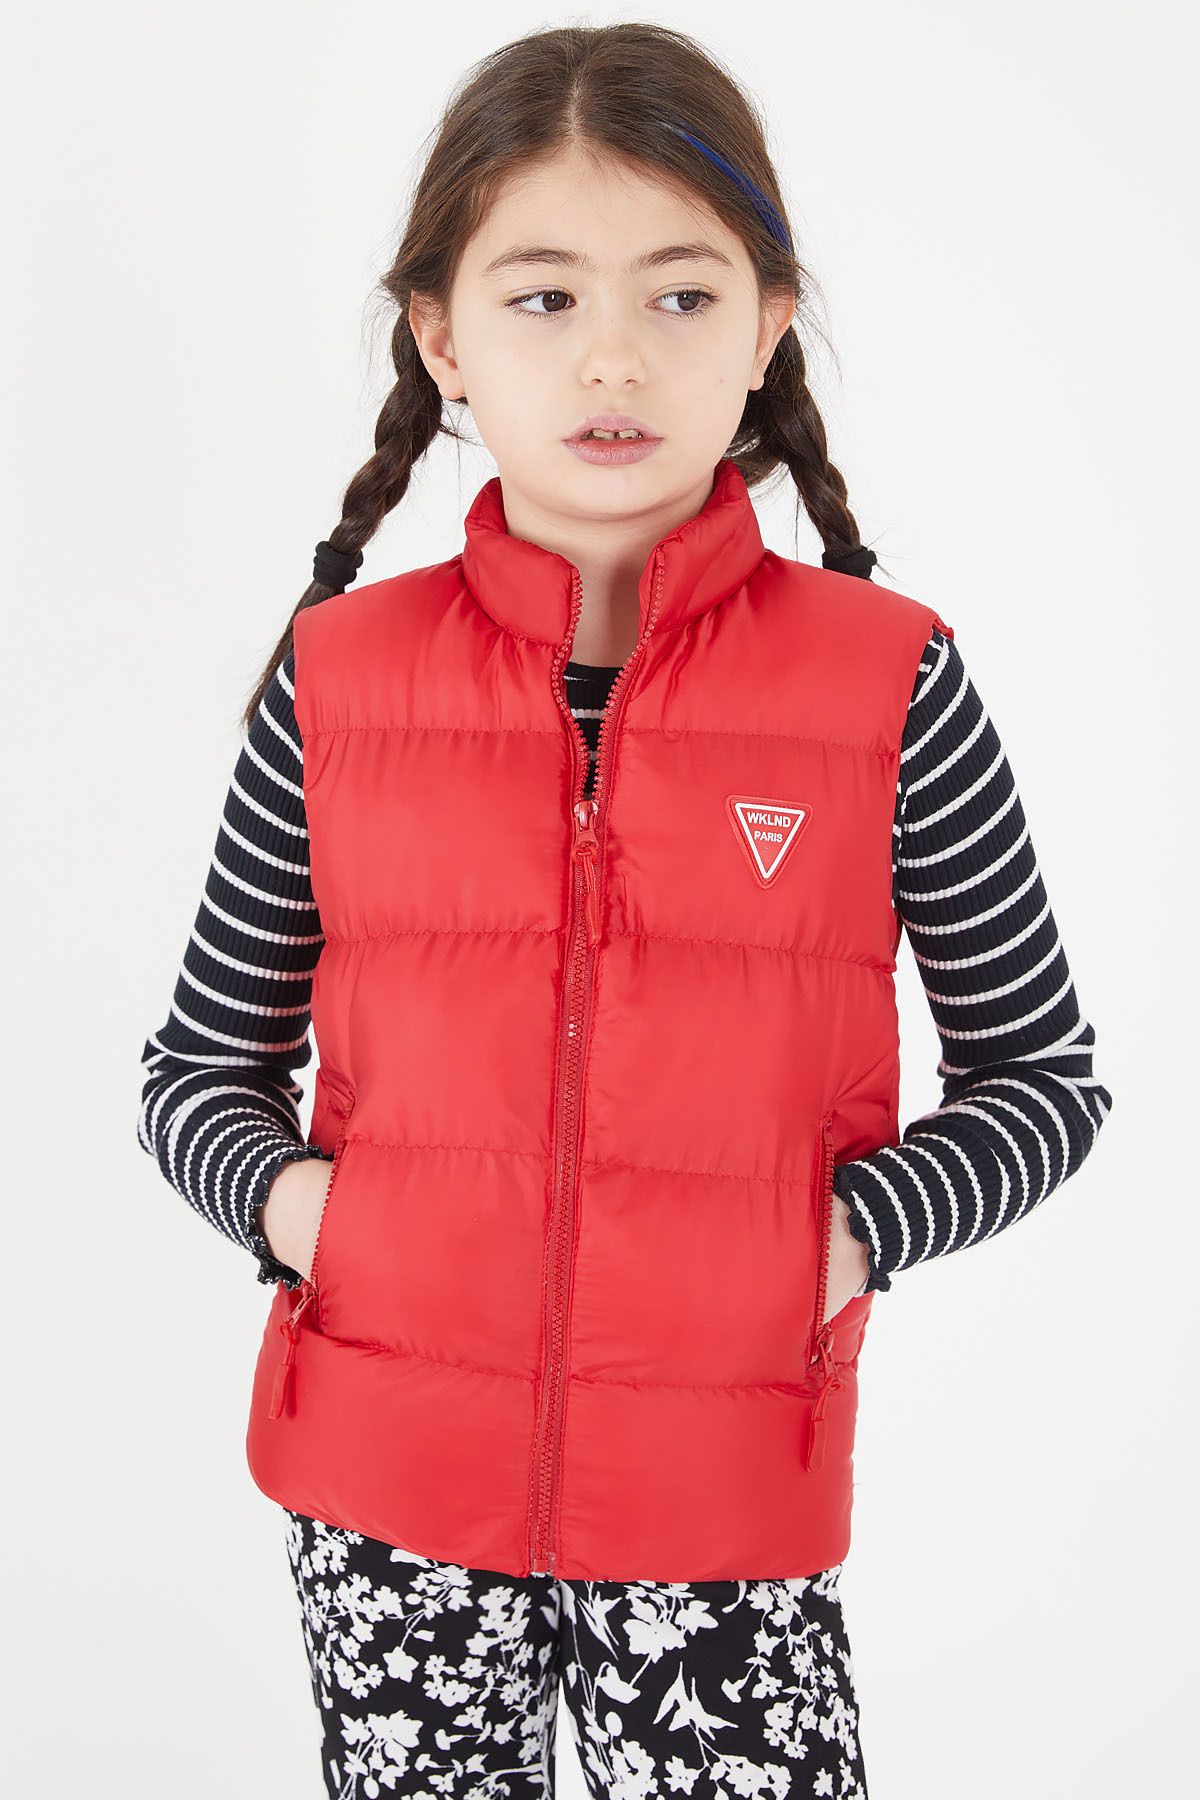 Cansın Mini Kız Çocuk Kırmızı Şişme Yelek Fermuarlı Cep 15076